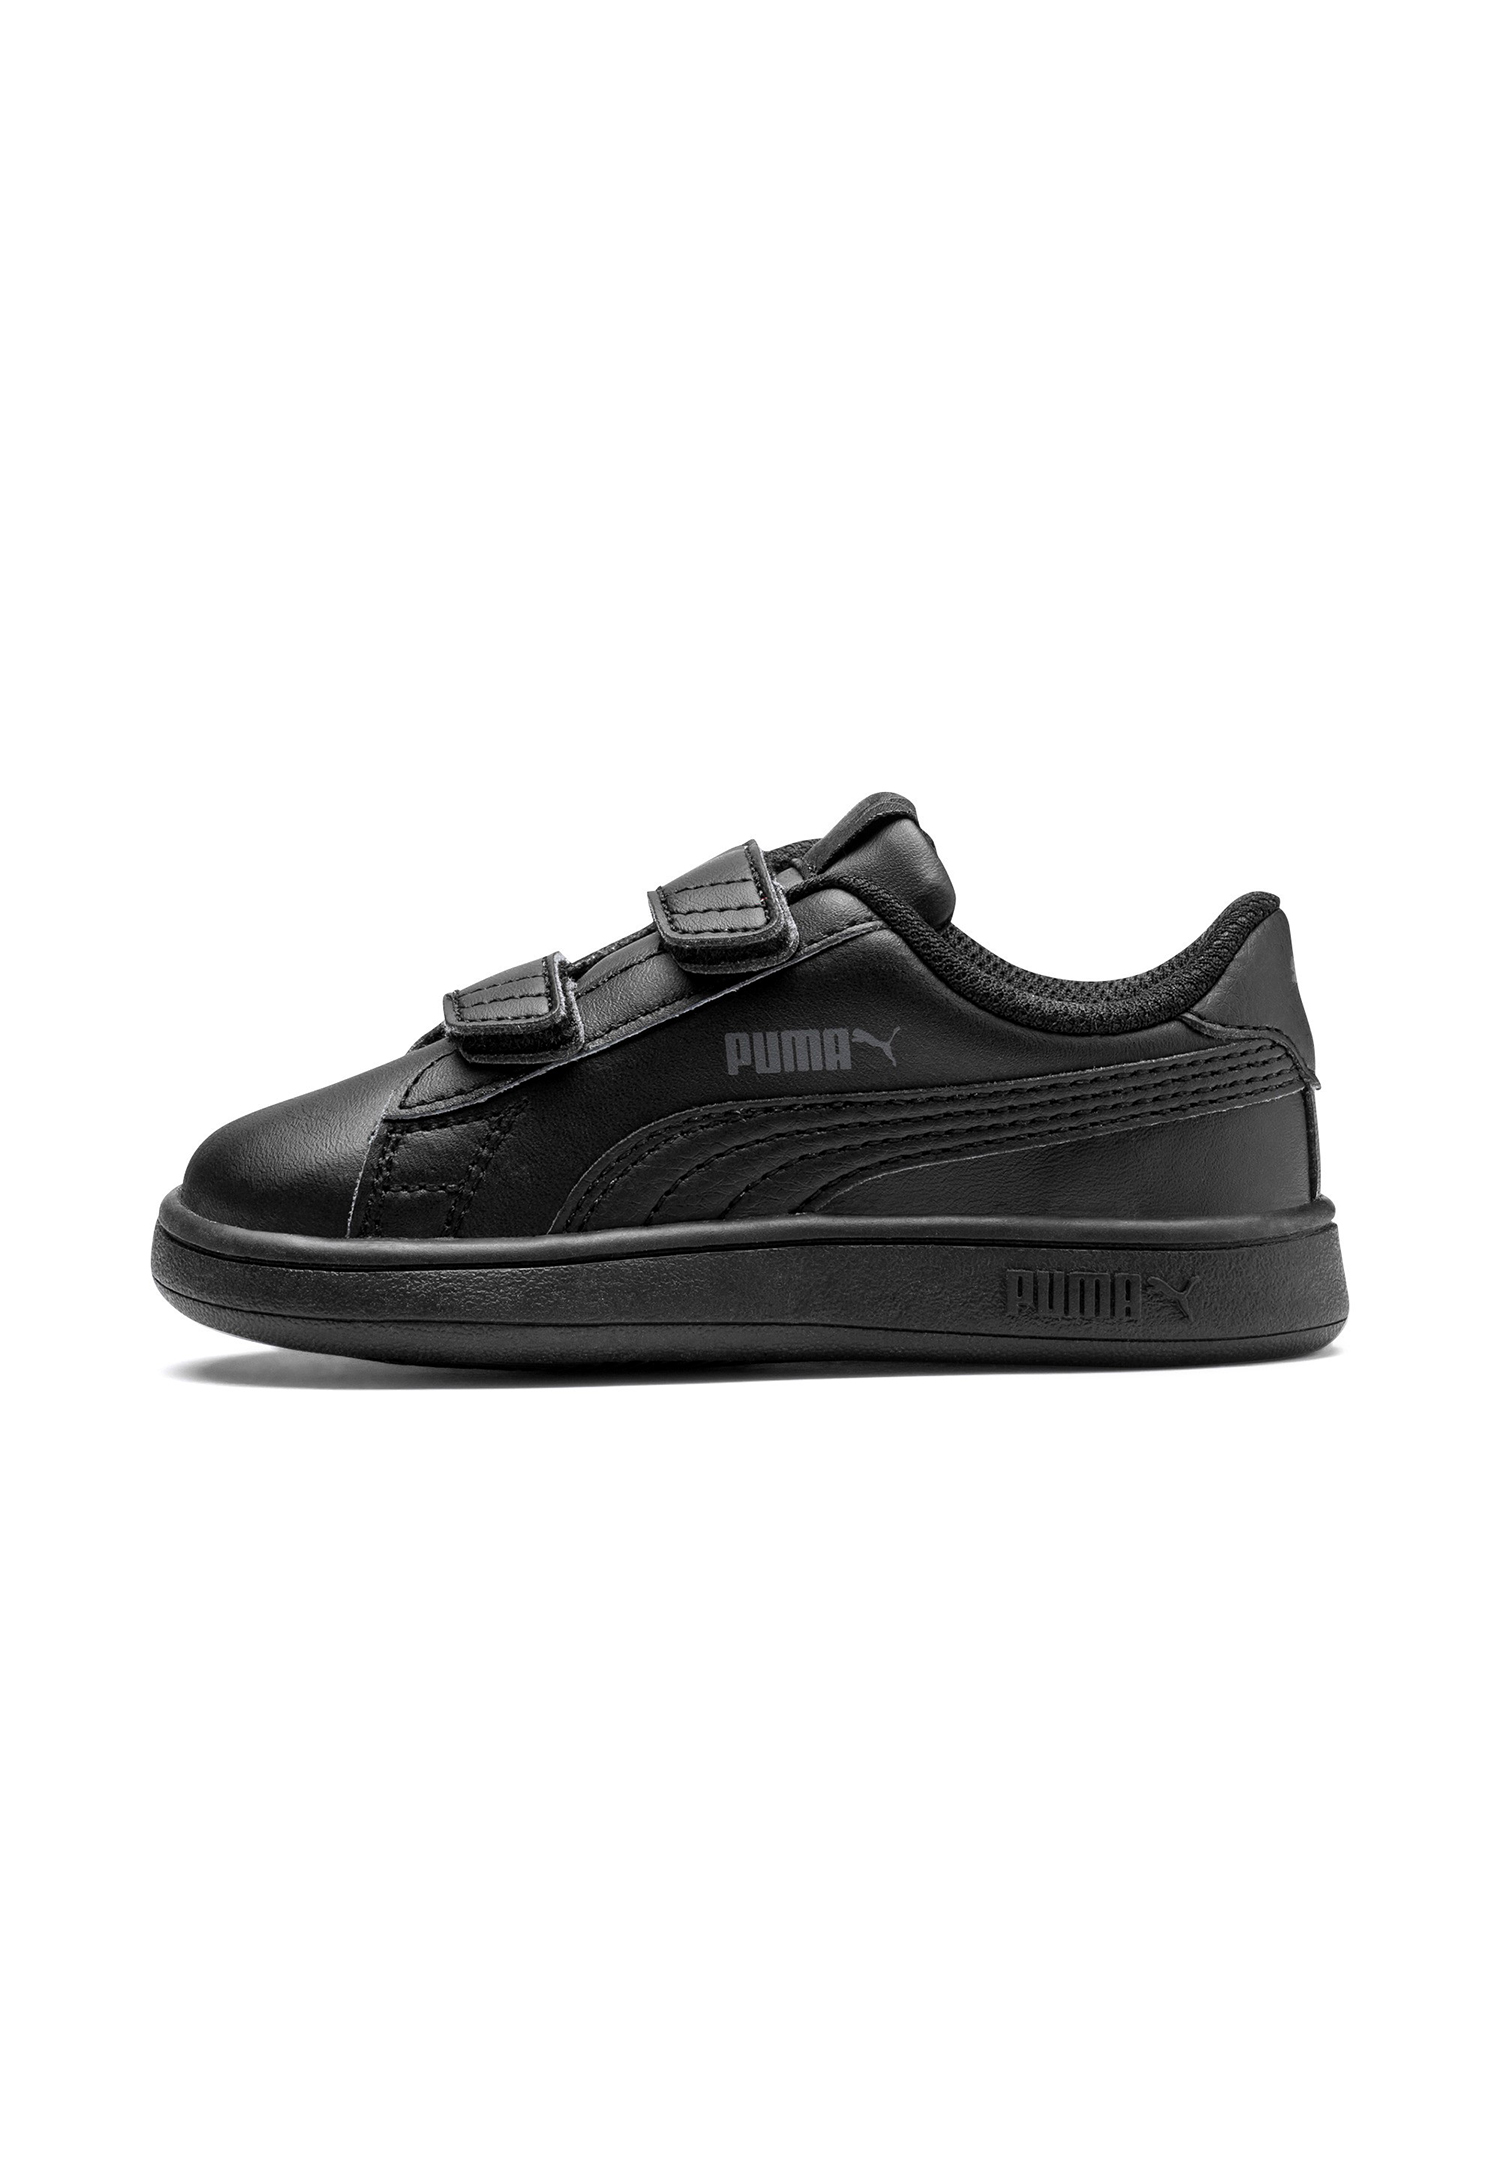 PUMA Smash v2 L V INF Kids Sneaker Schuhe schwarz 365174 01